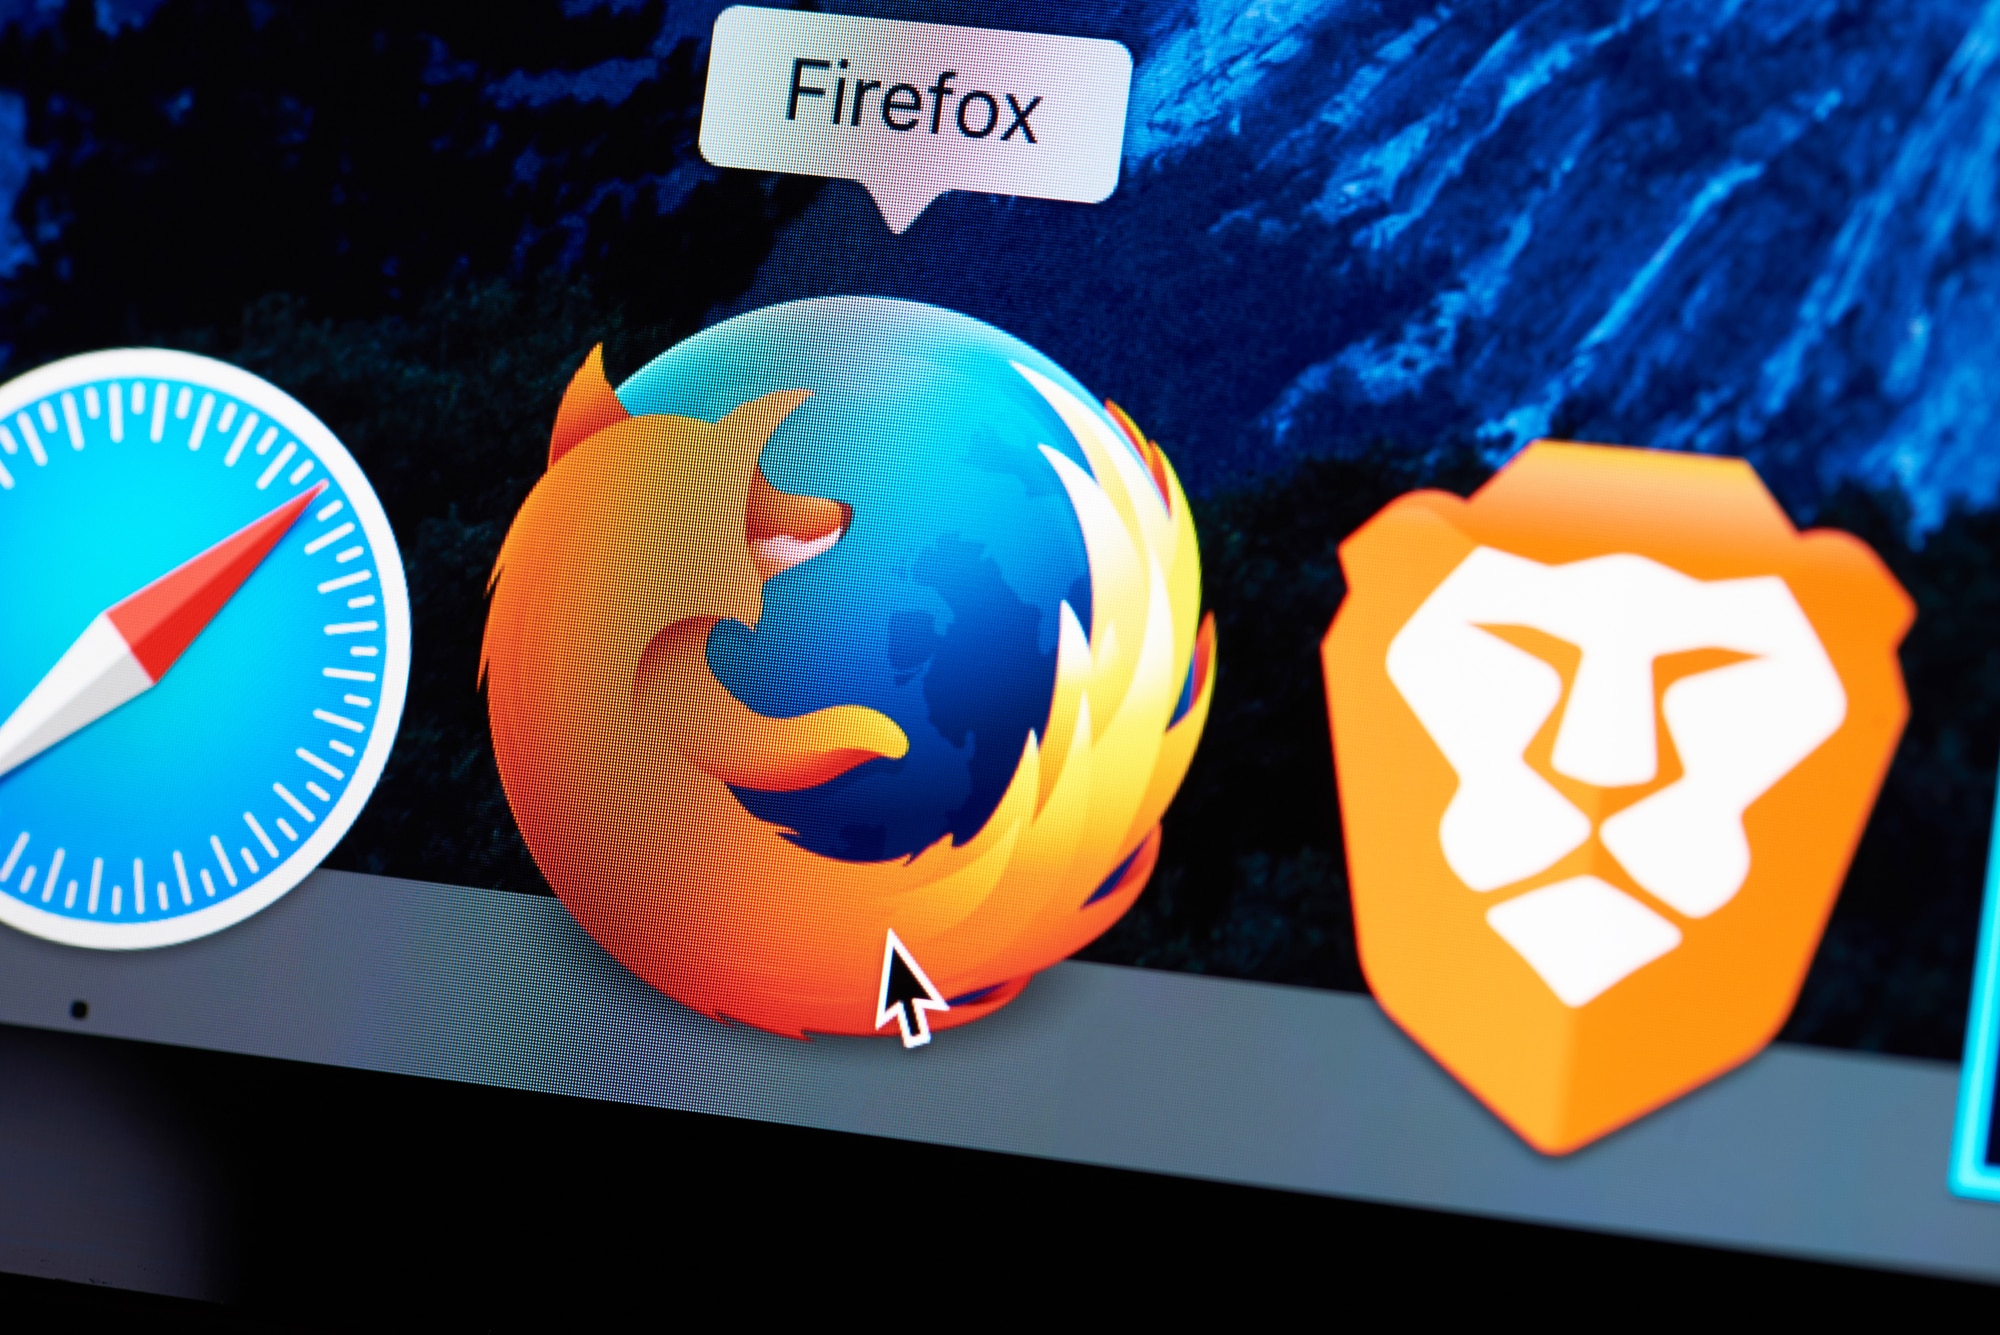 Brave'i ja Firefoxi võrdlemine: ainulaadsed omadused ja funktsioonid